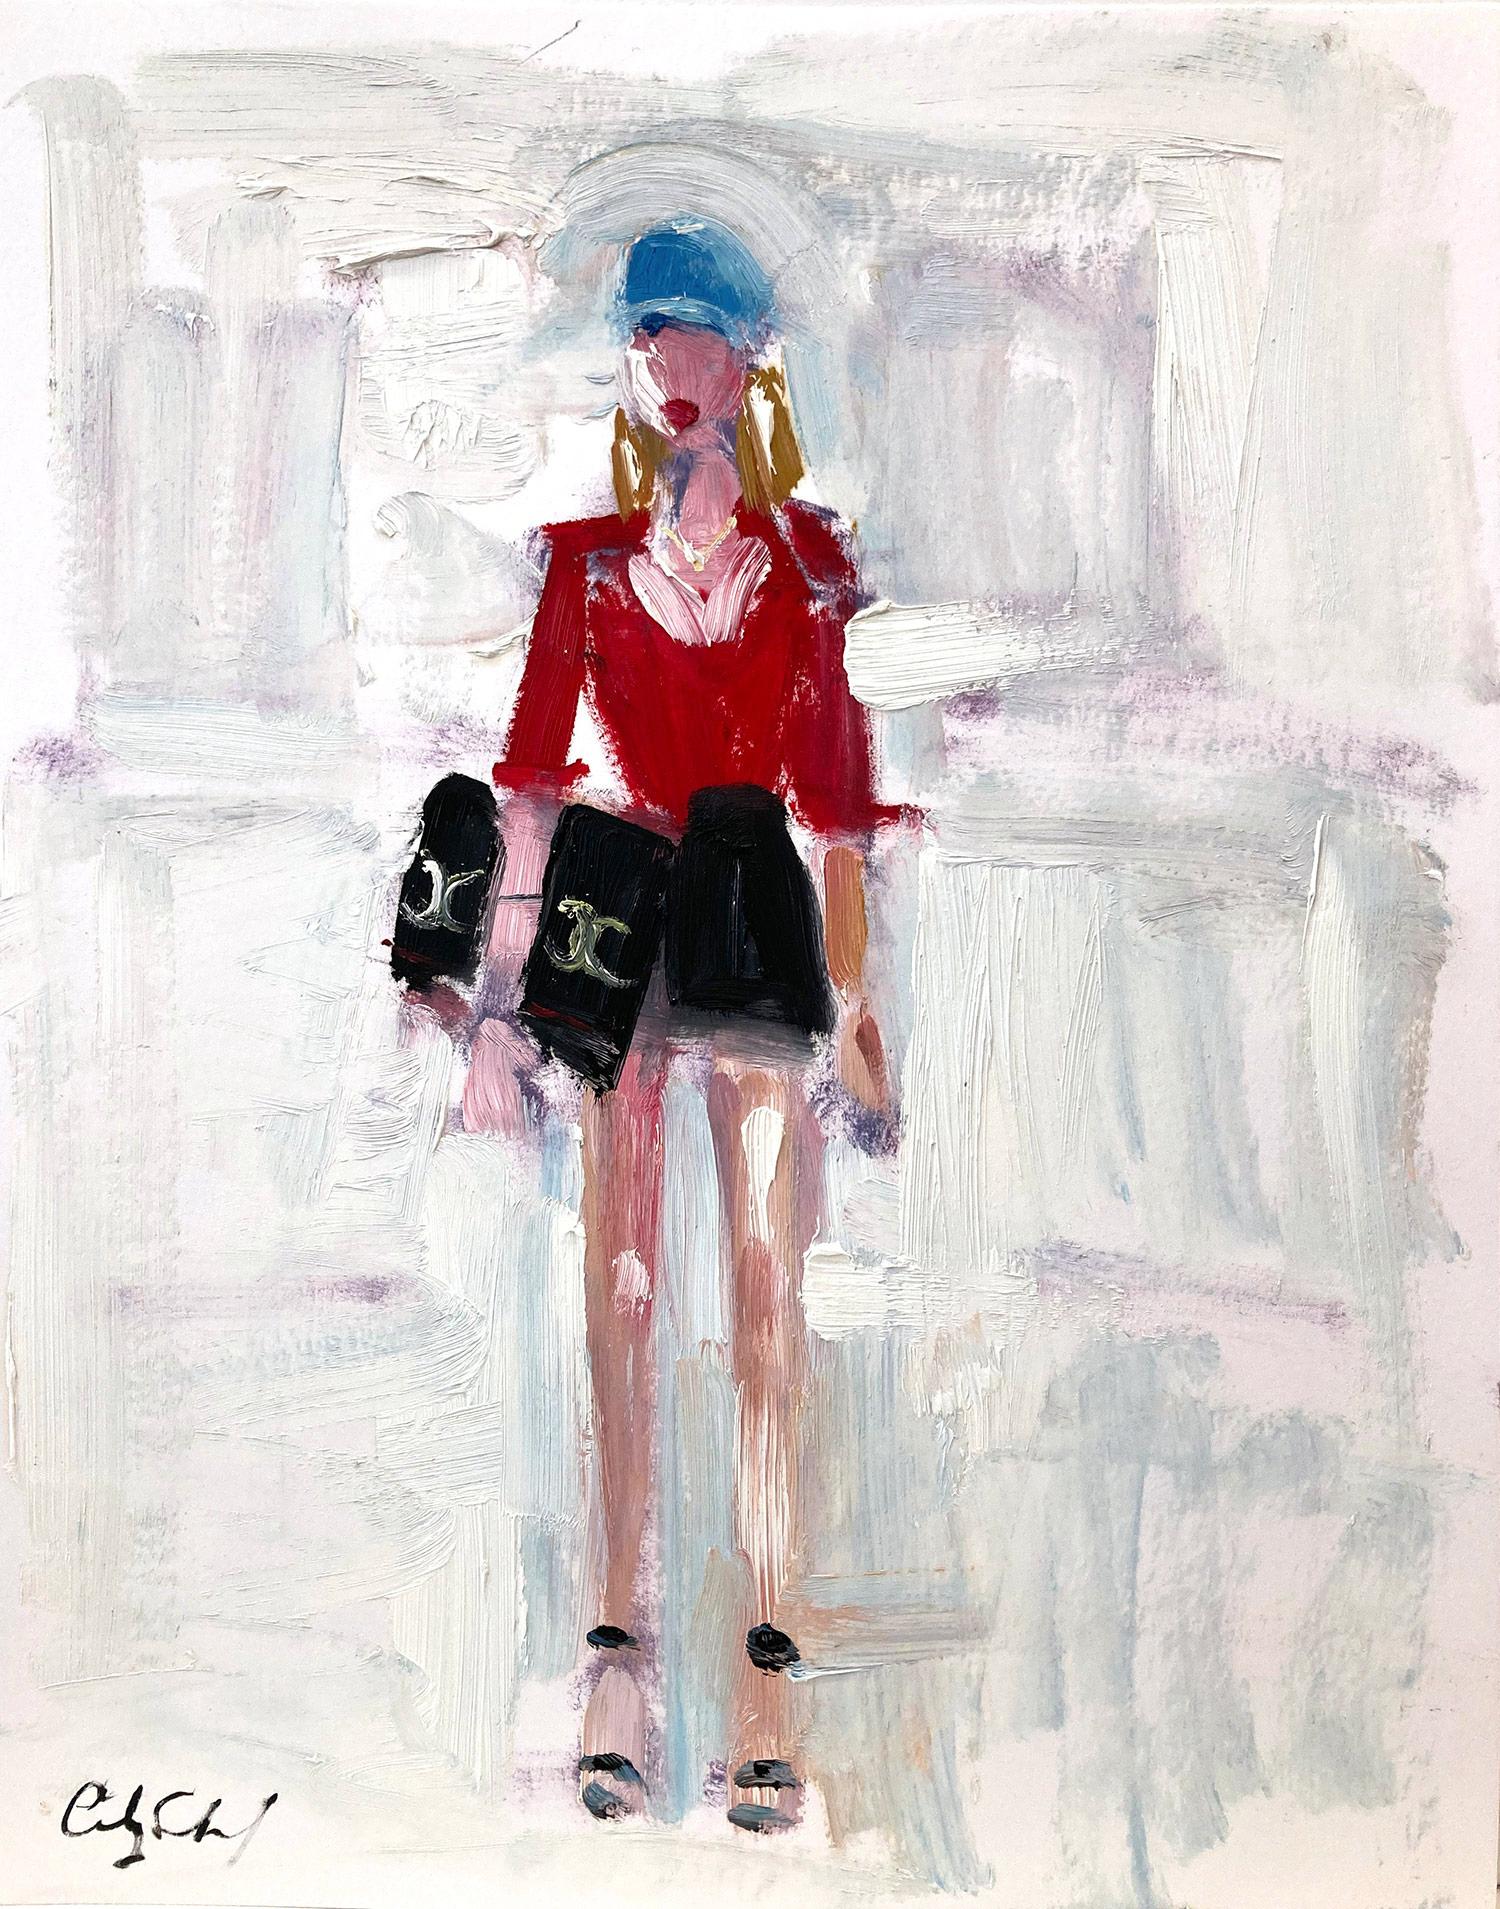 Abstract Painting Cindy Shaoul - Peinture à l'huile colorée « Stepping Out in Chanel » de Chanel Haute Couture sur papier